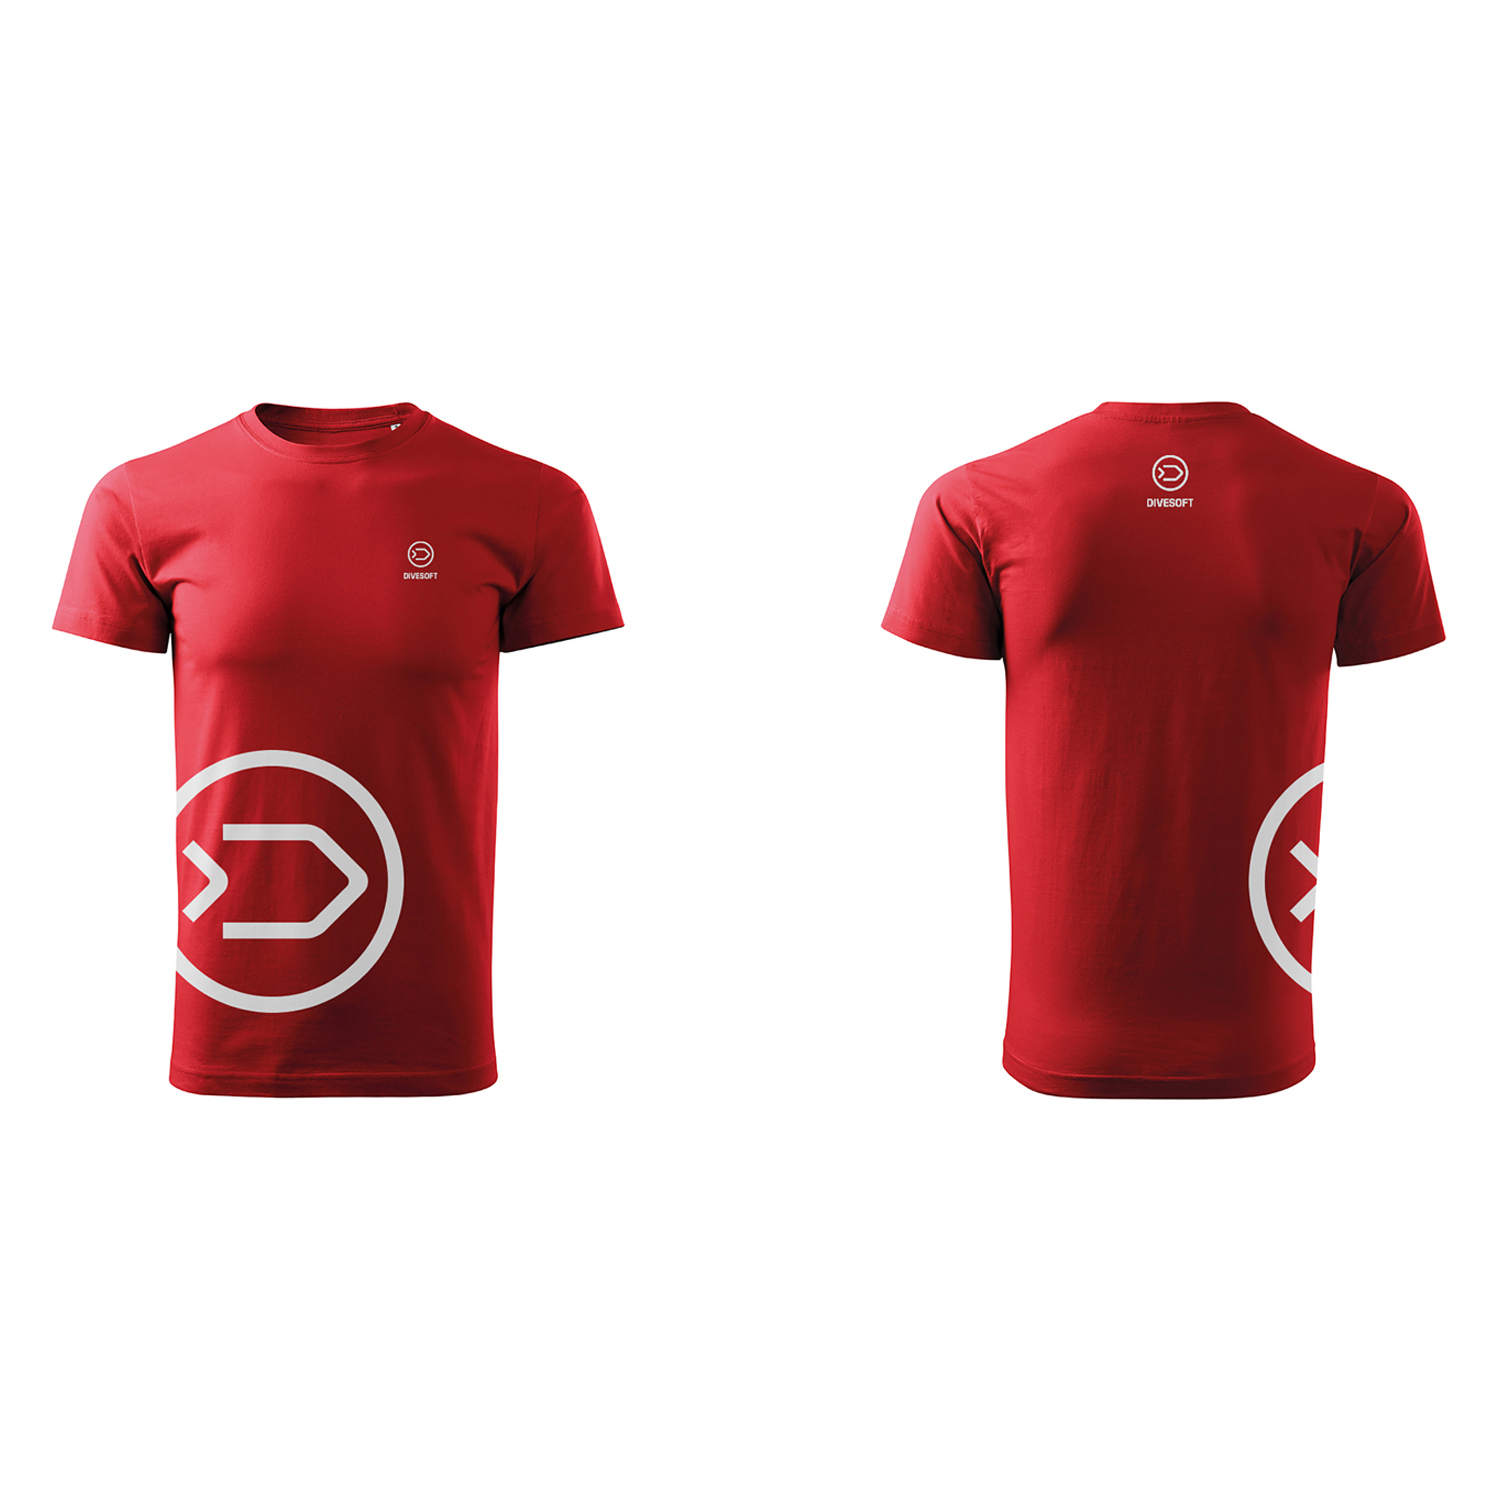 T-shirt DIVESOFT - red